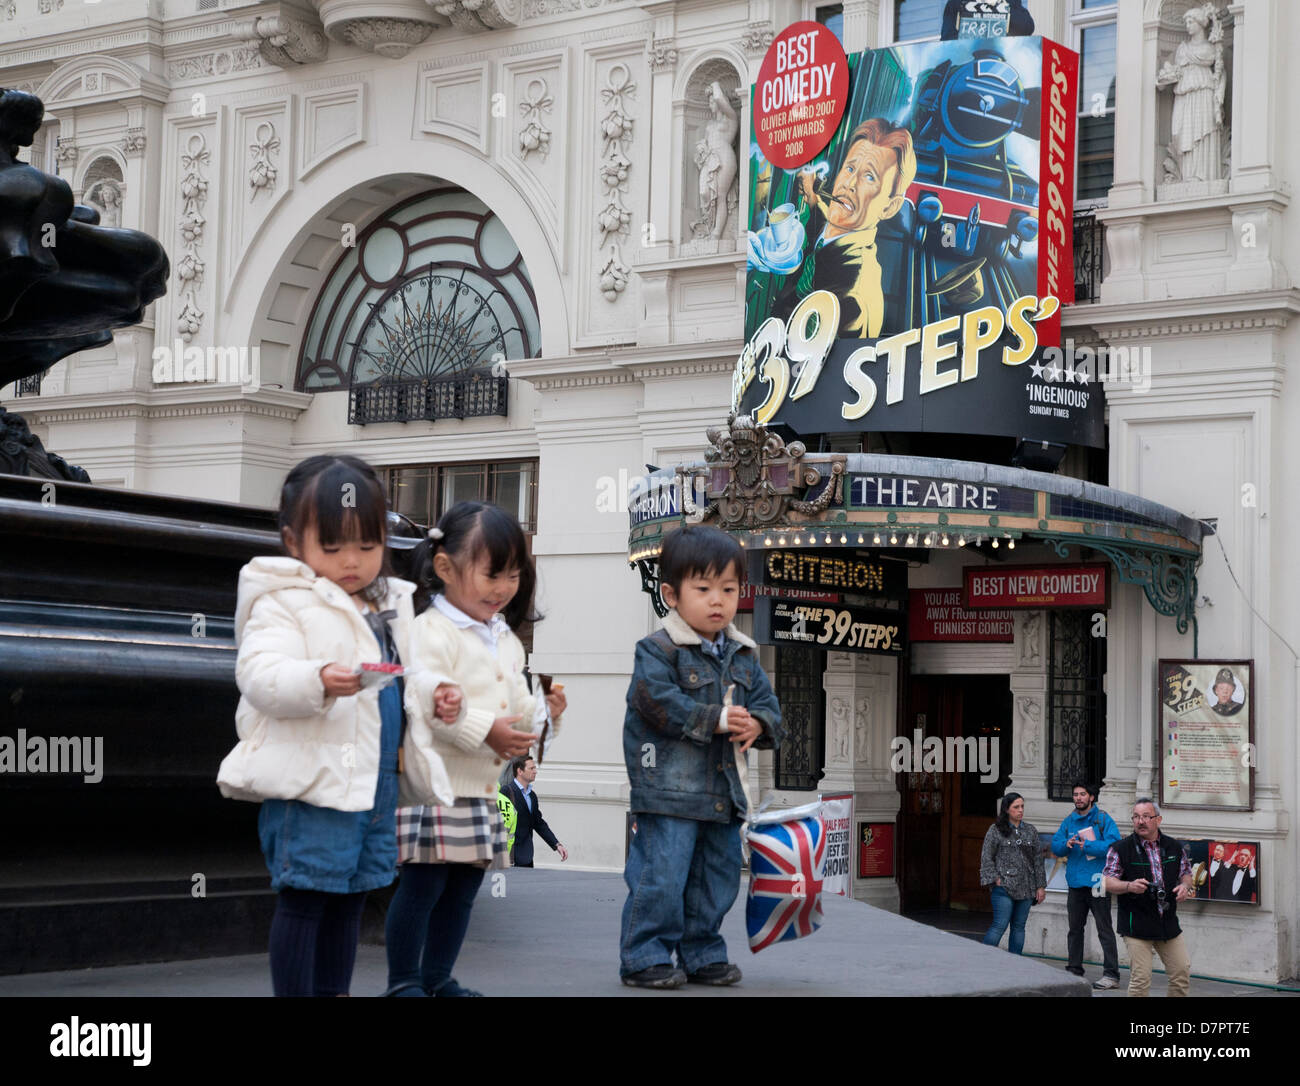 L'asiatique enfants en dehors de la Criterion Theatre, West End, Londres, Angleterre, Royaume-Uni Banque D'Images